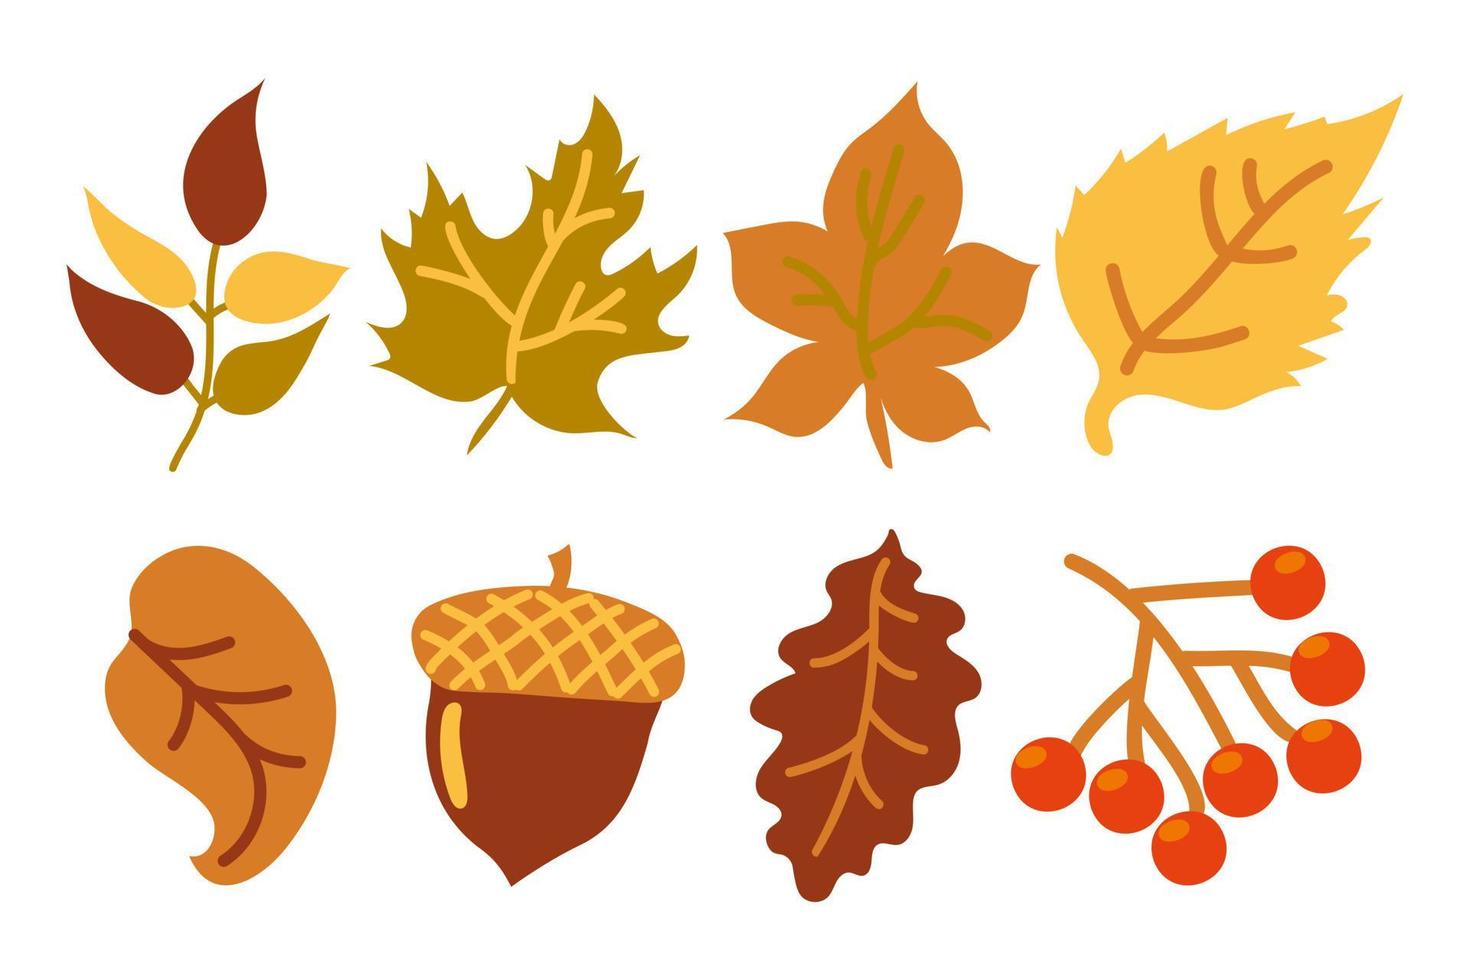 Satz gelbe und orange Herbstblätter, eine Eichel und ein Zweig mit roten Beeren. Herbstblätter. Blätter von Eichen-, Ahorn-, Eschen-, Birken-, Ebereschen- und Lindenzweigen. gelb, orange, rot und grün. Herbst. vektor